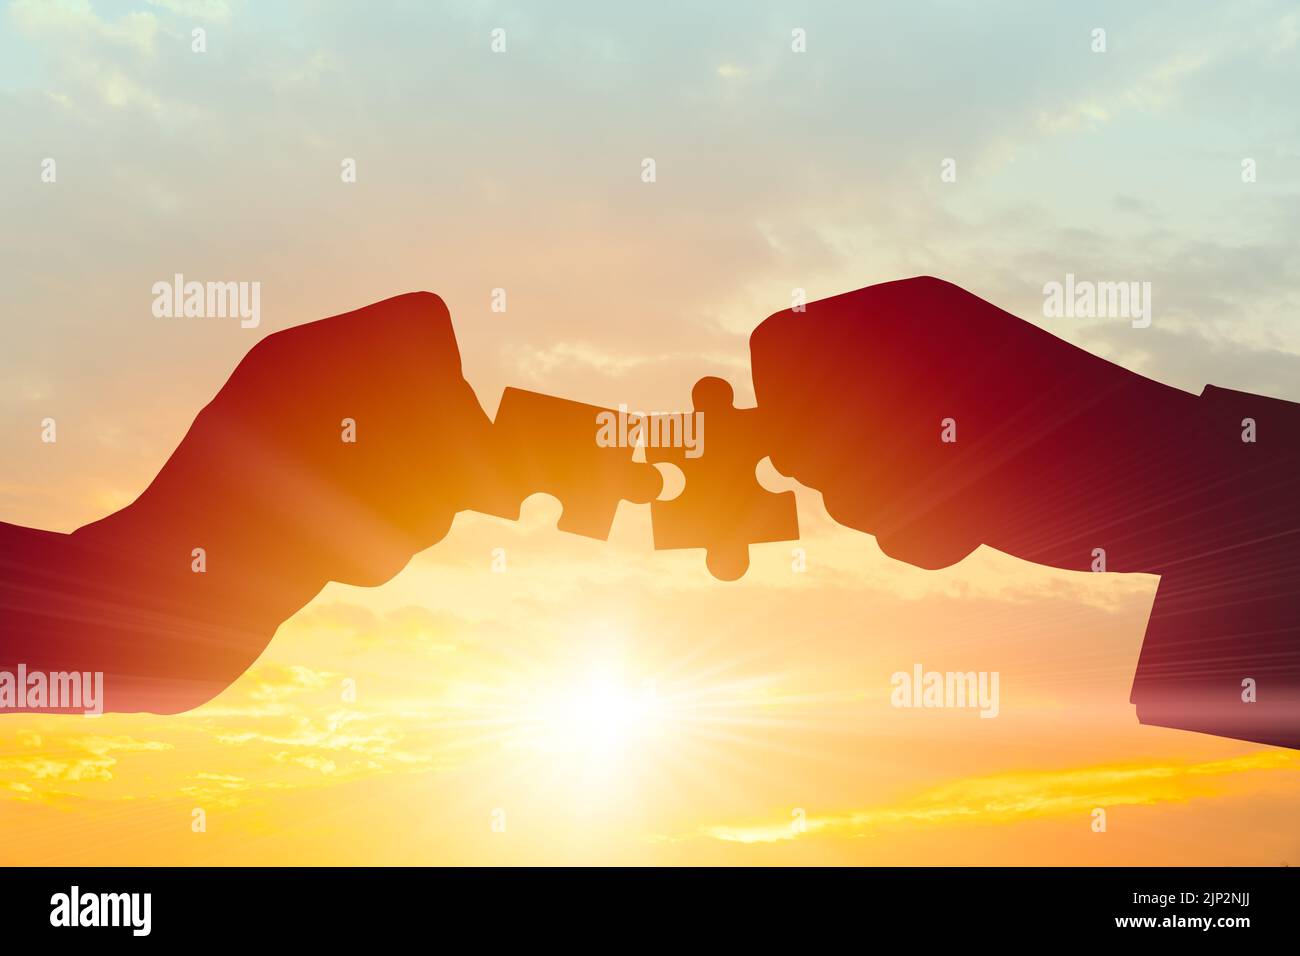 Business Teamwork, Unisciti al concetto di partnership e cooperazione. Silhouette di due mani che uniscono due pezzi di puzzle si collegano insieme sul cielo mattutino. Foto Stock